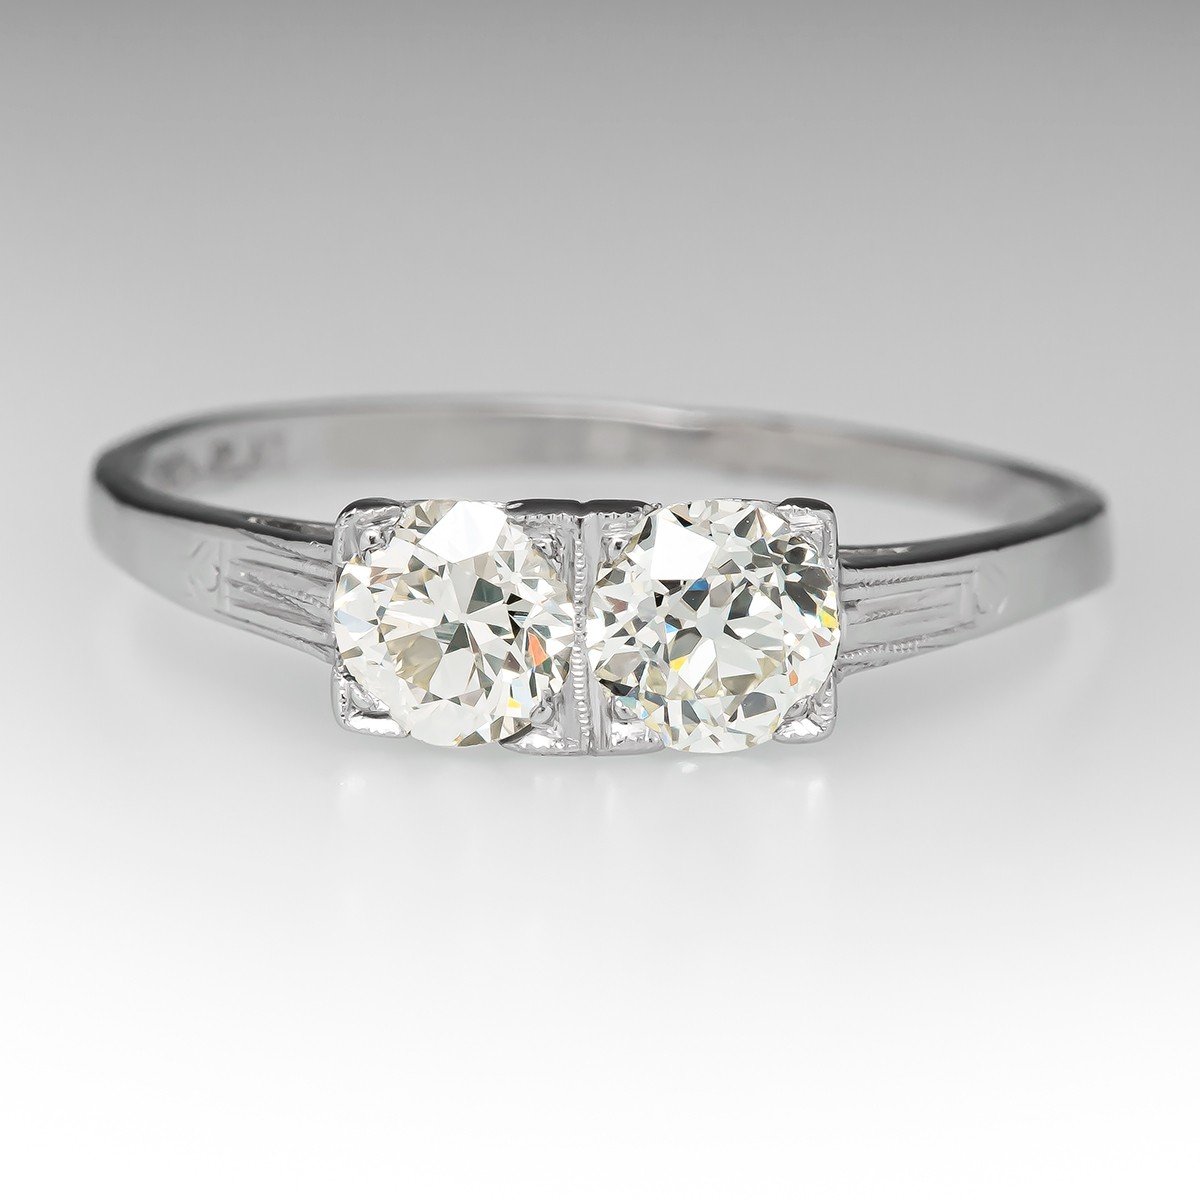 1ctw Art Deco Two-Stone Diamond Ring in Platinum